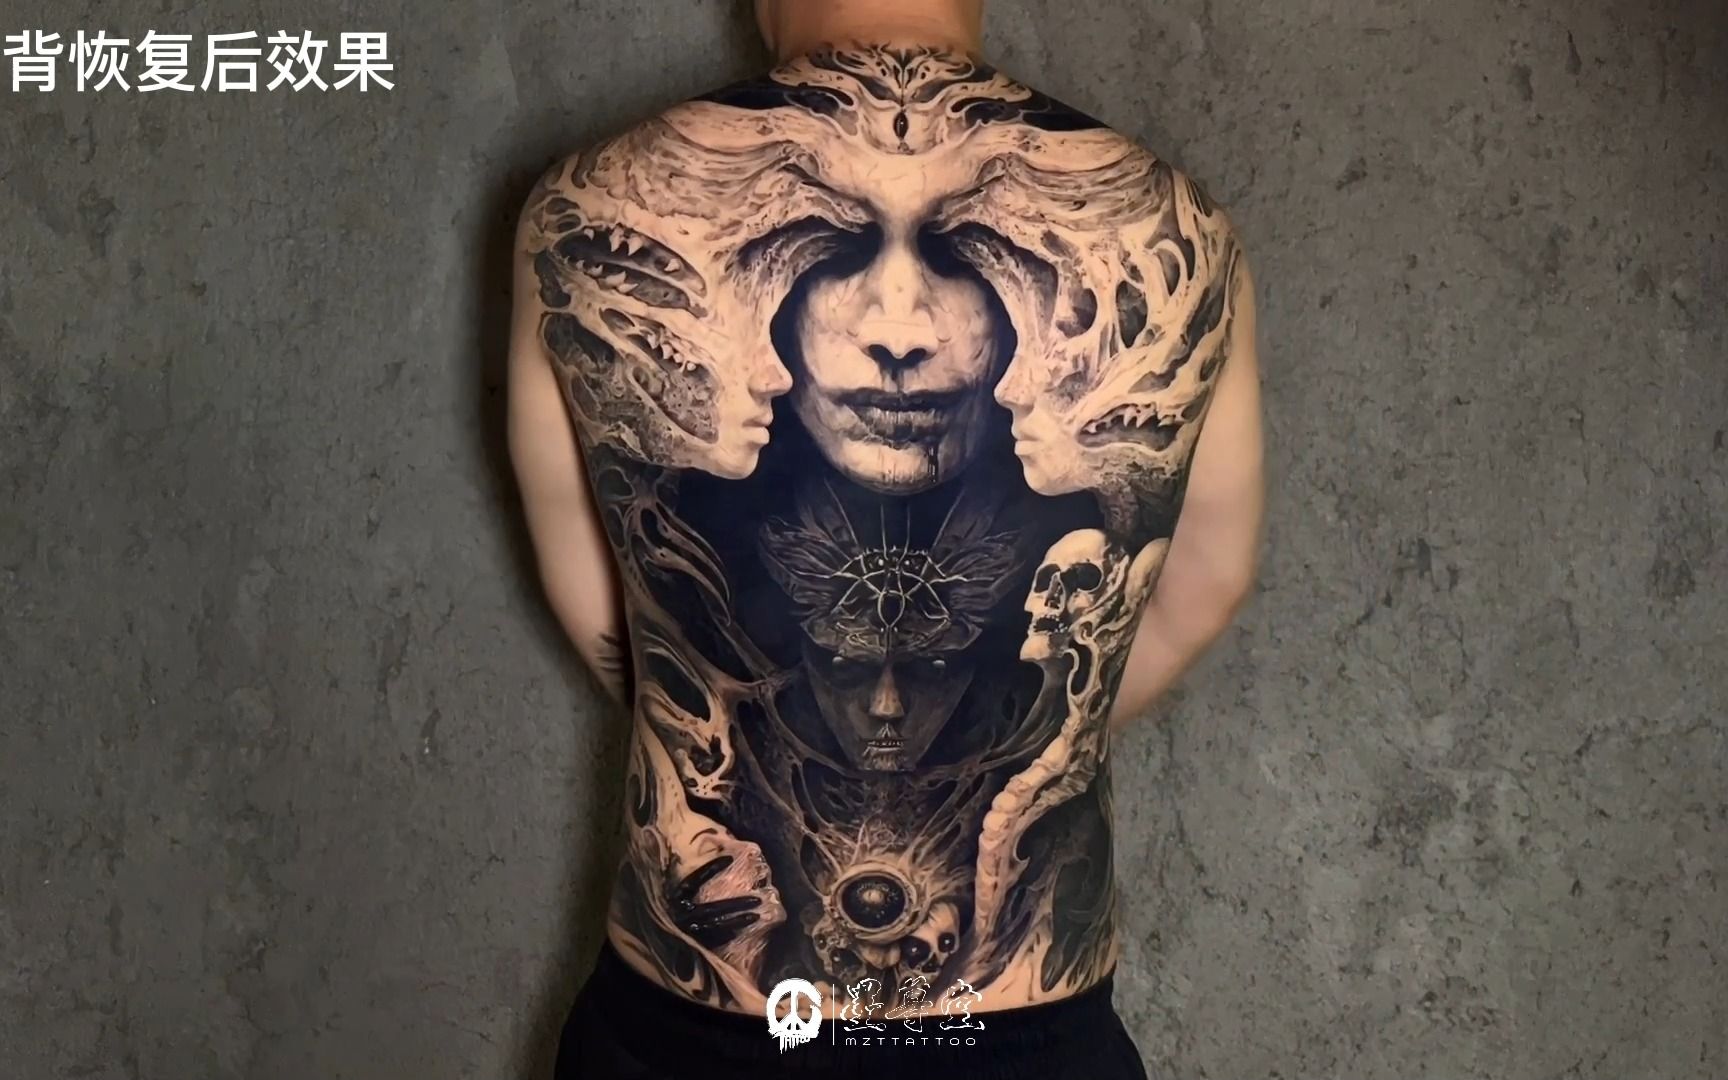 中国（廊坊）国际纹身展【暗黑组】第一名